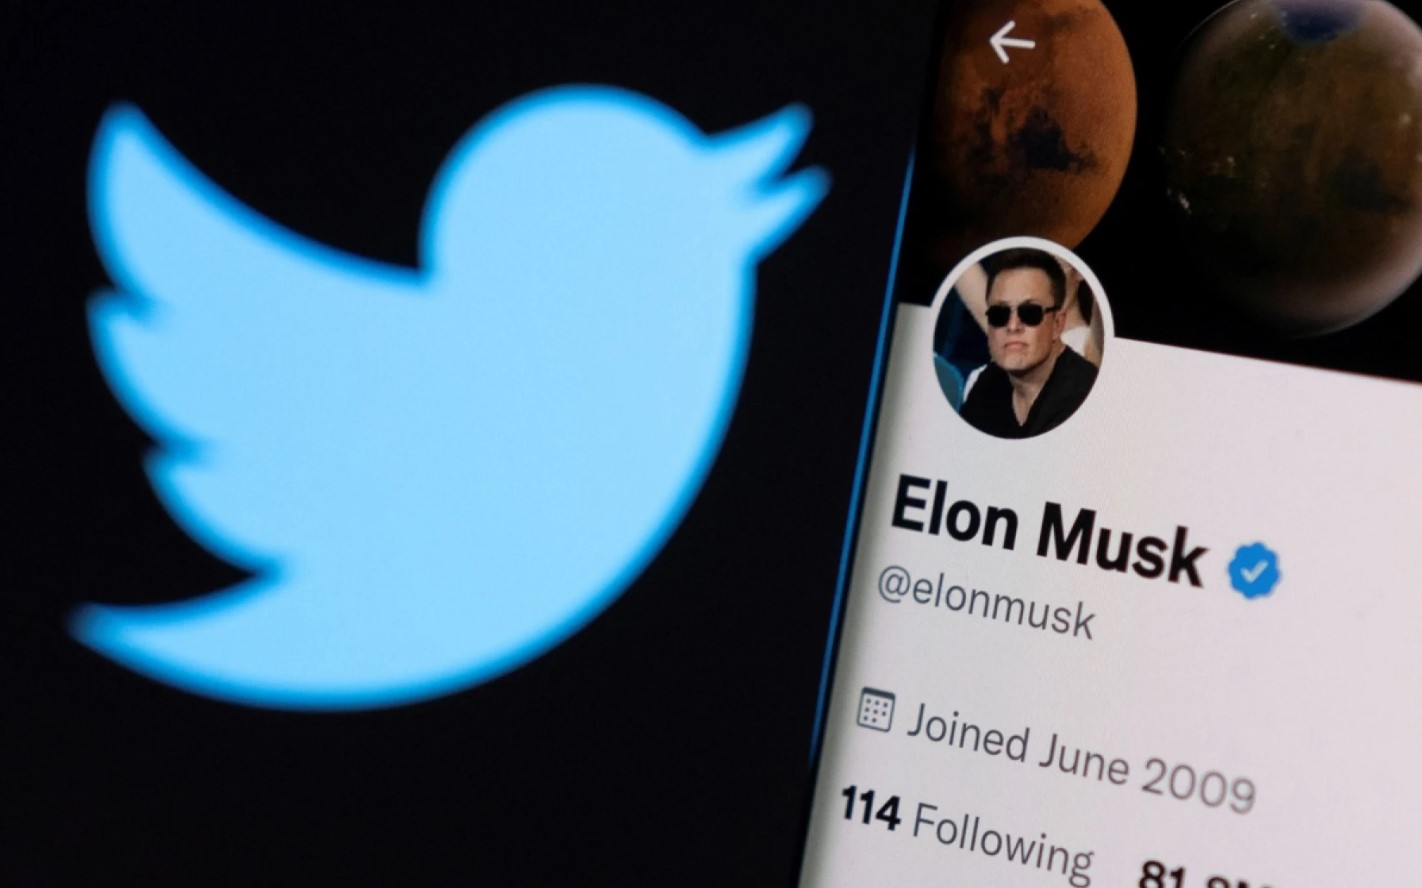 Desplome de Twitter en Wall Street tras suspensión de compra de Elon Musk